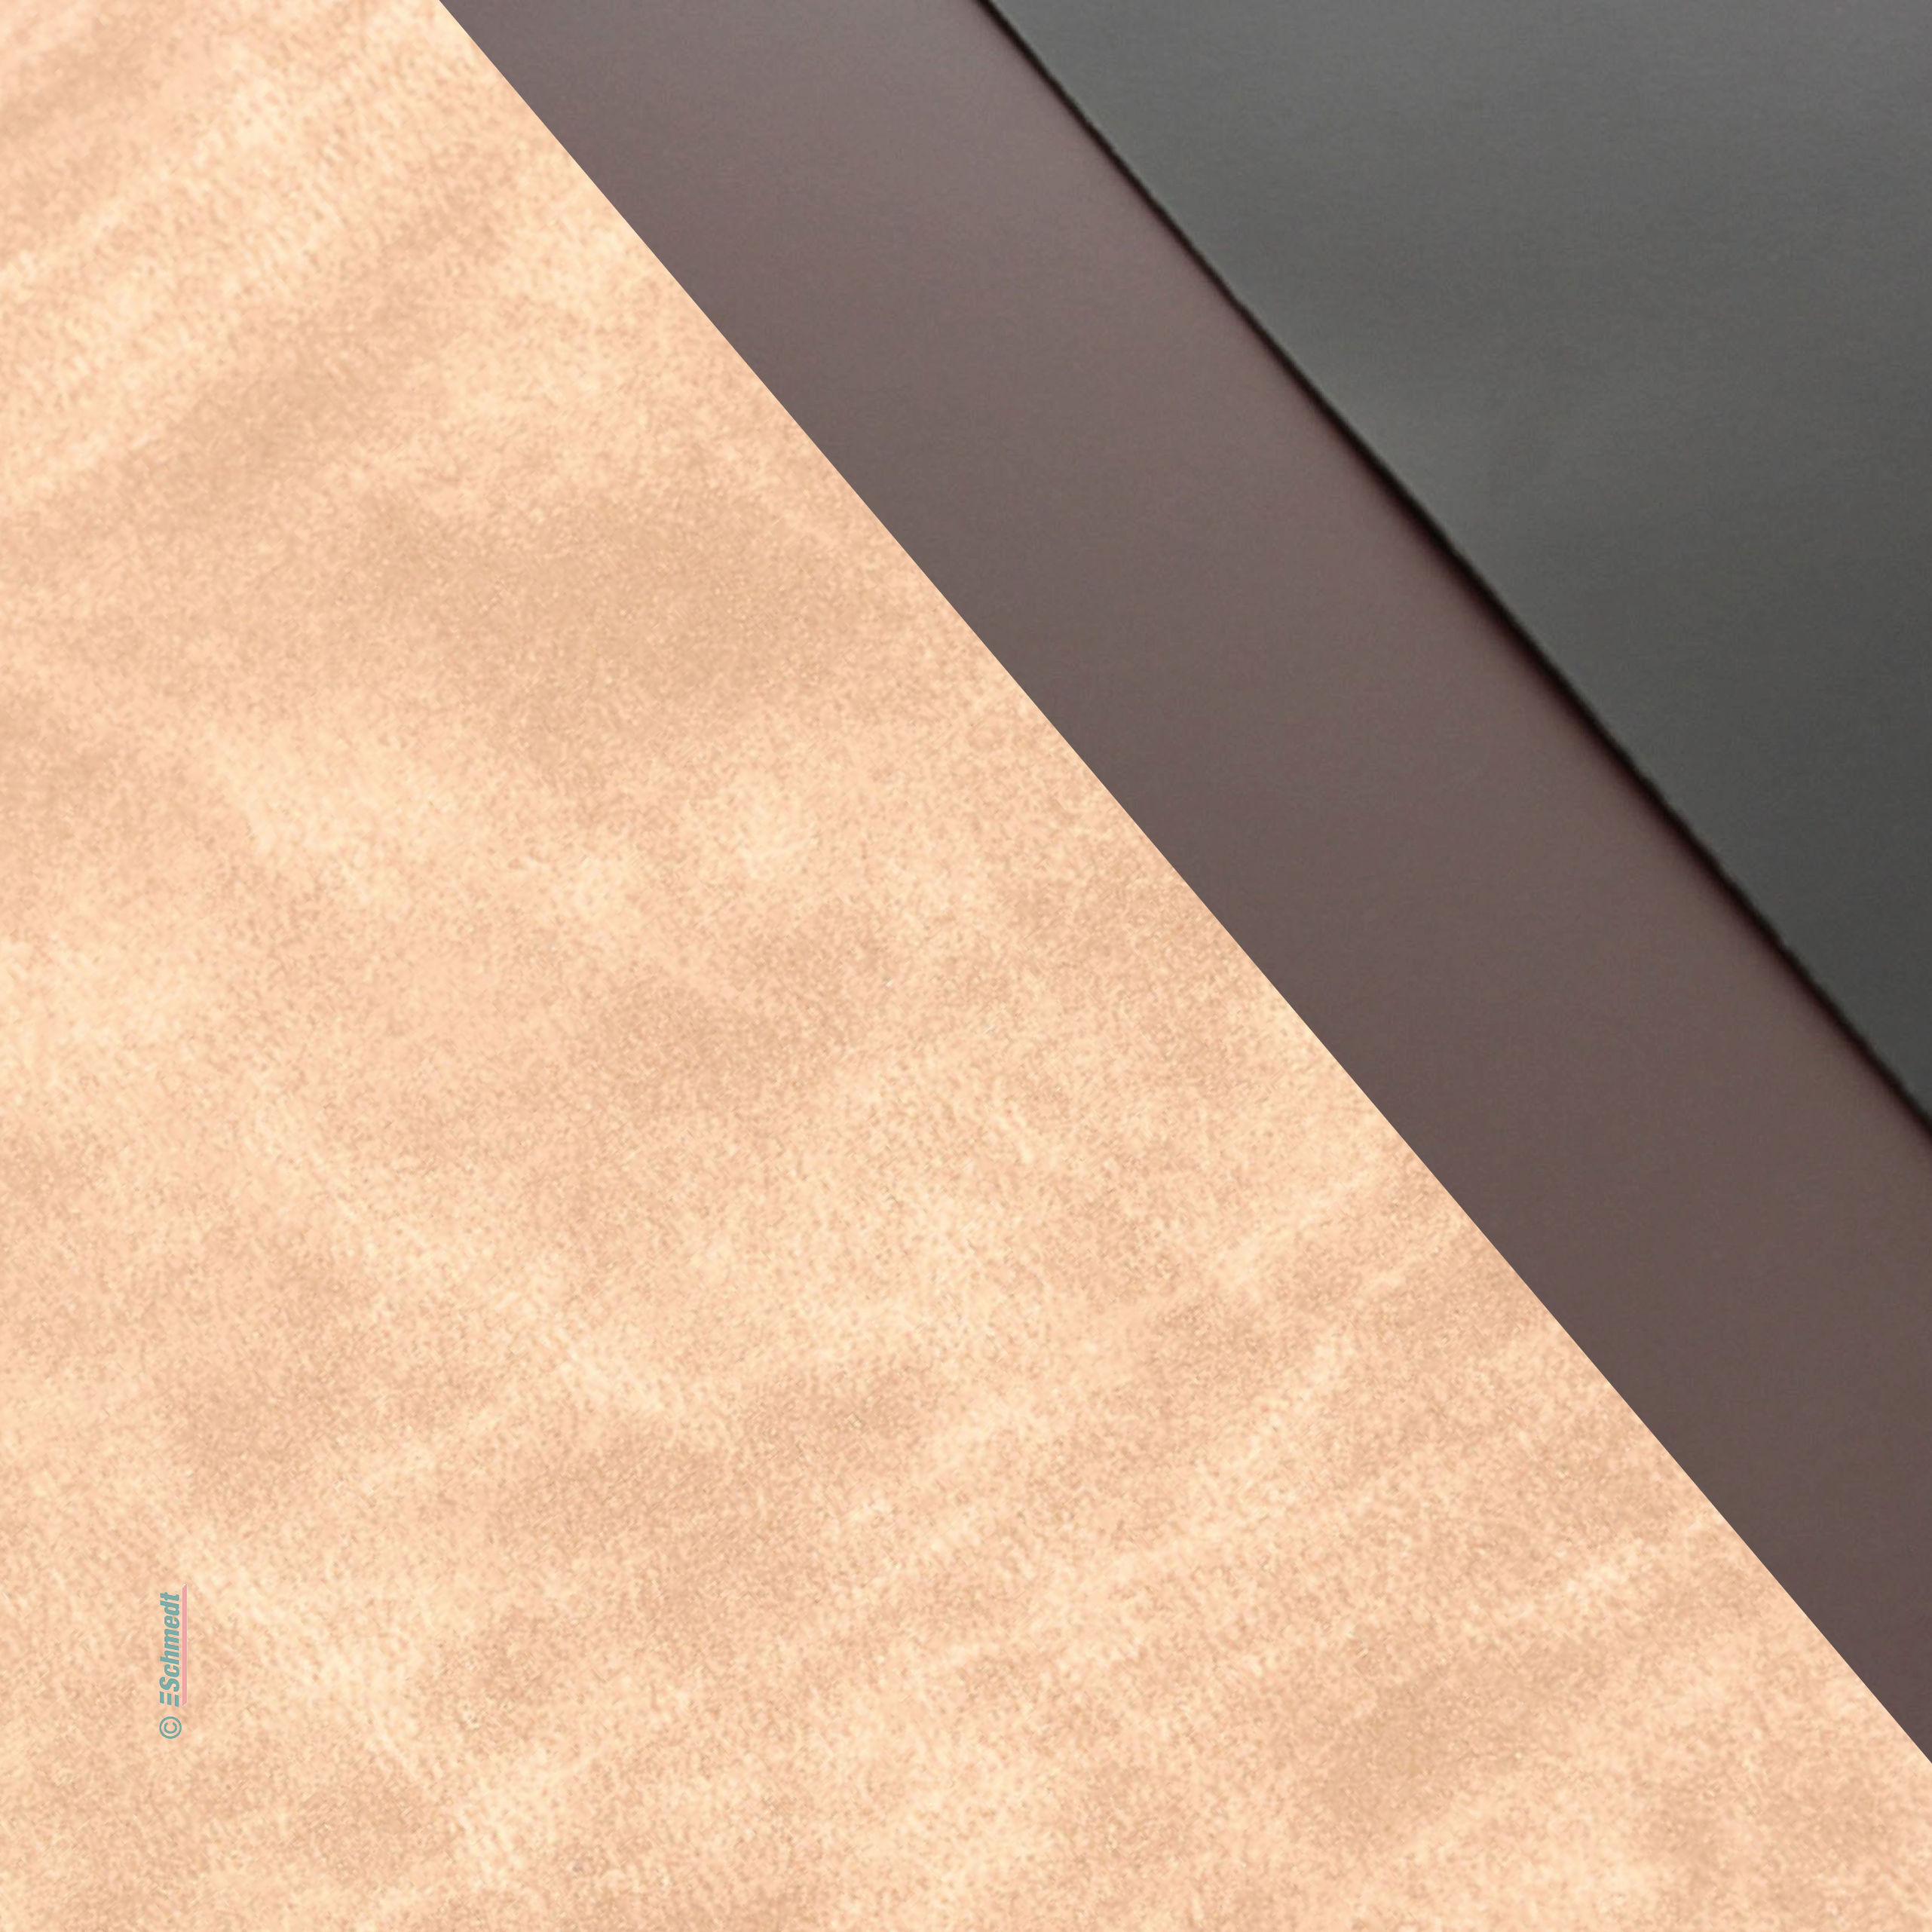 Taratan II - Lederfaserstoff, dick - Prägung Nubuck Smooth - Farbe 8091 - beige meliert - zur Herstellung von Schreibtischunterlagen, Unters...